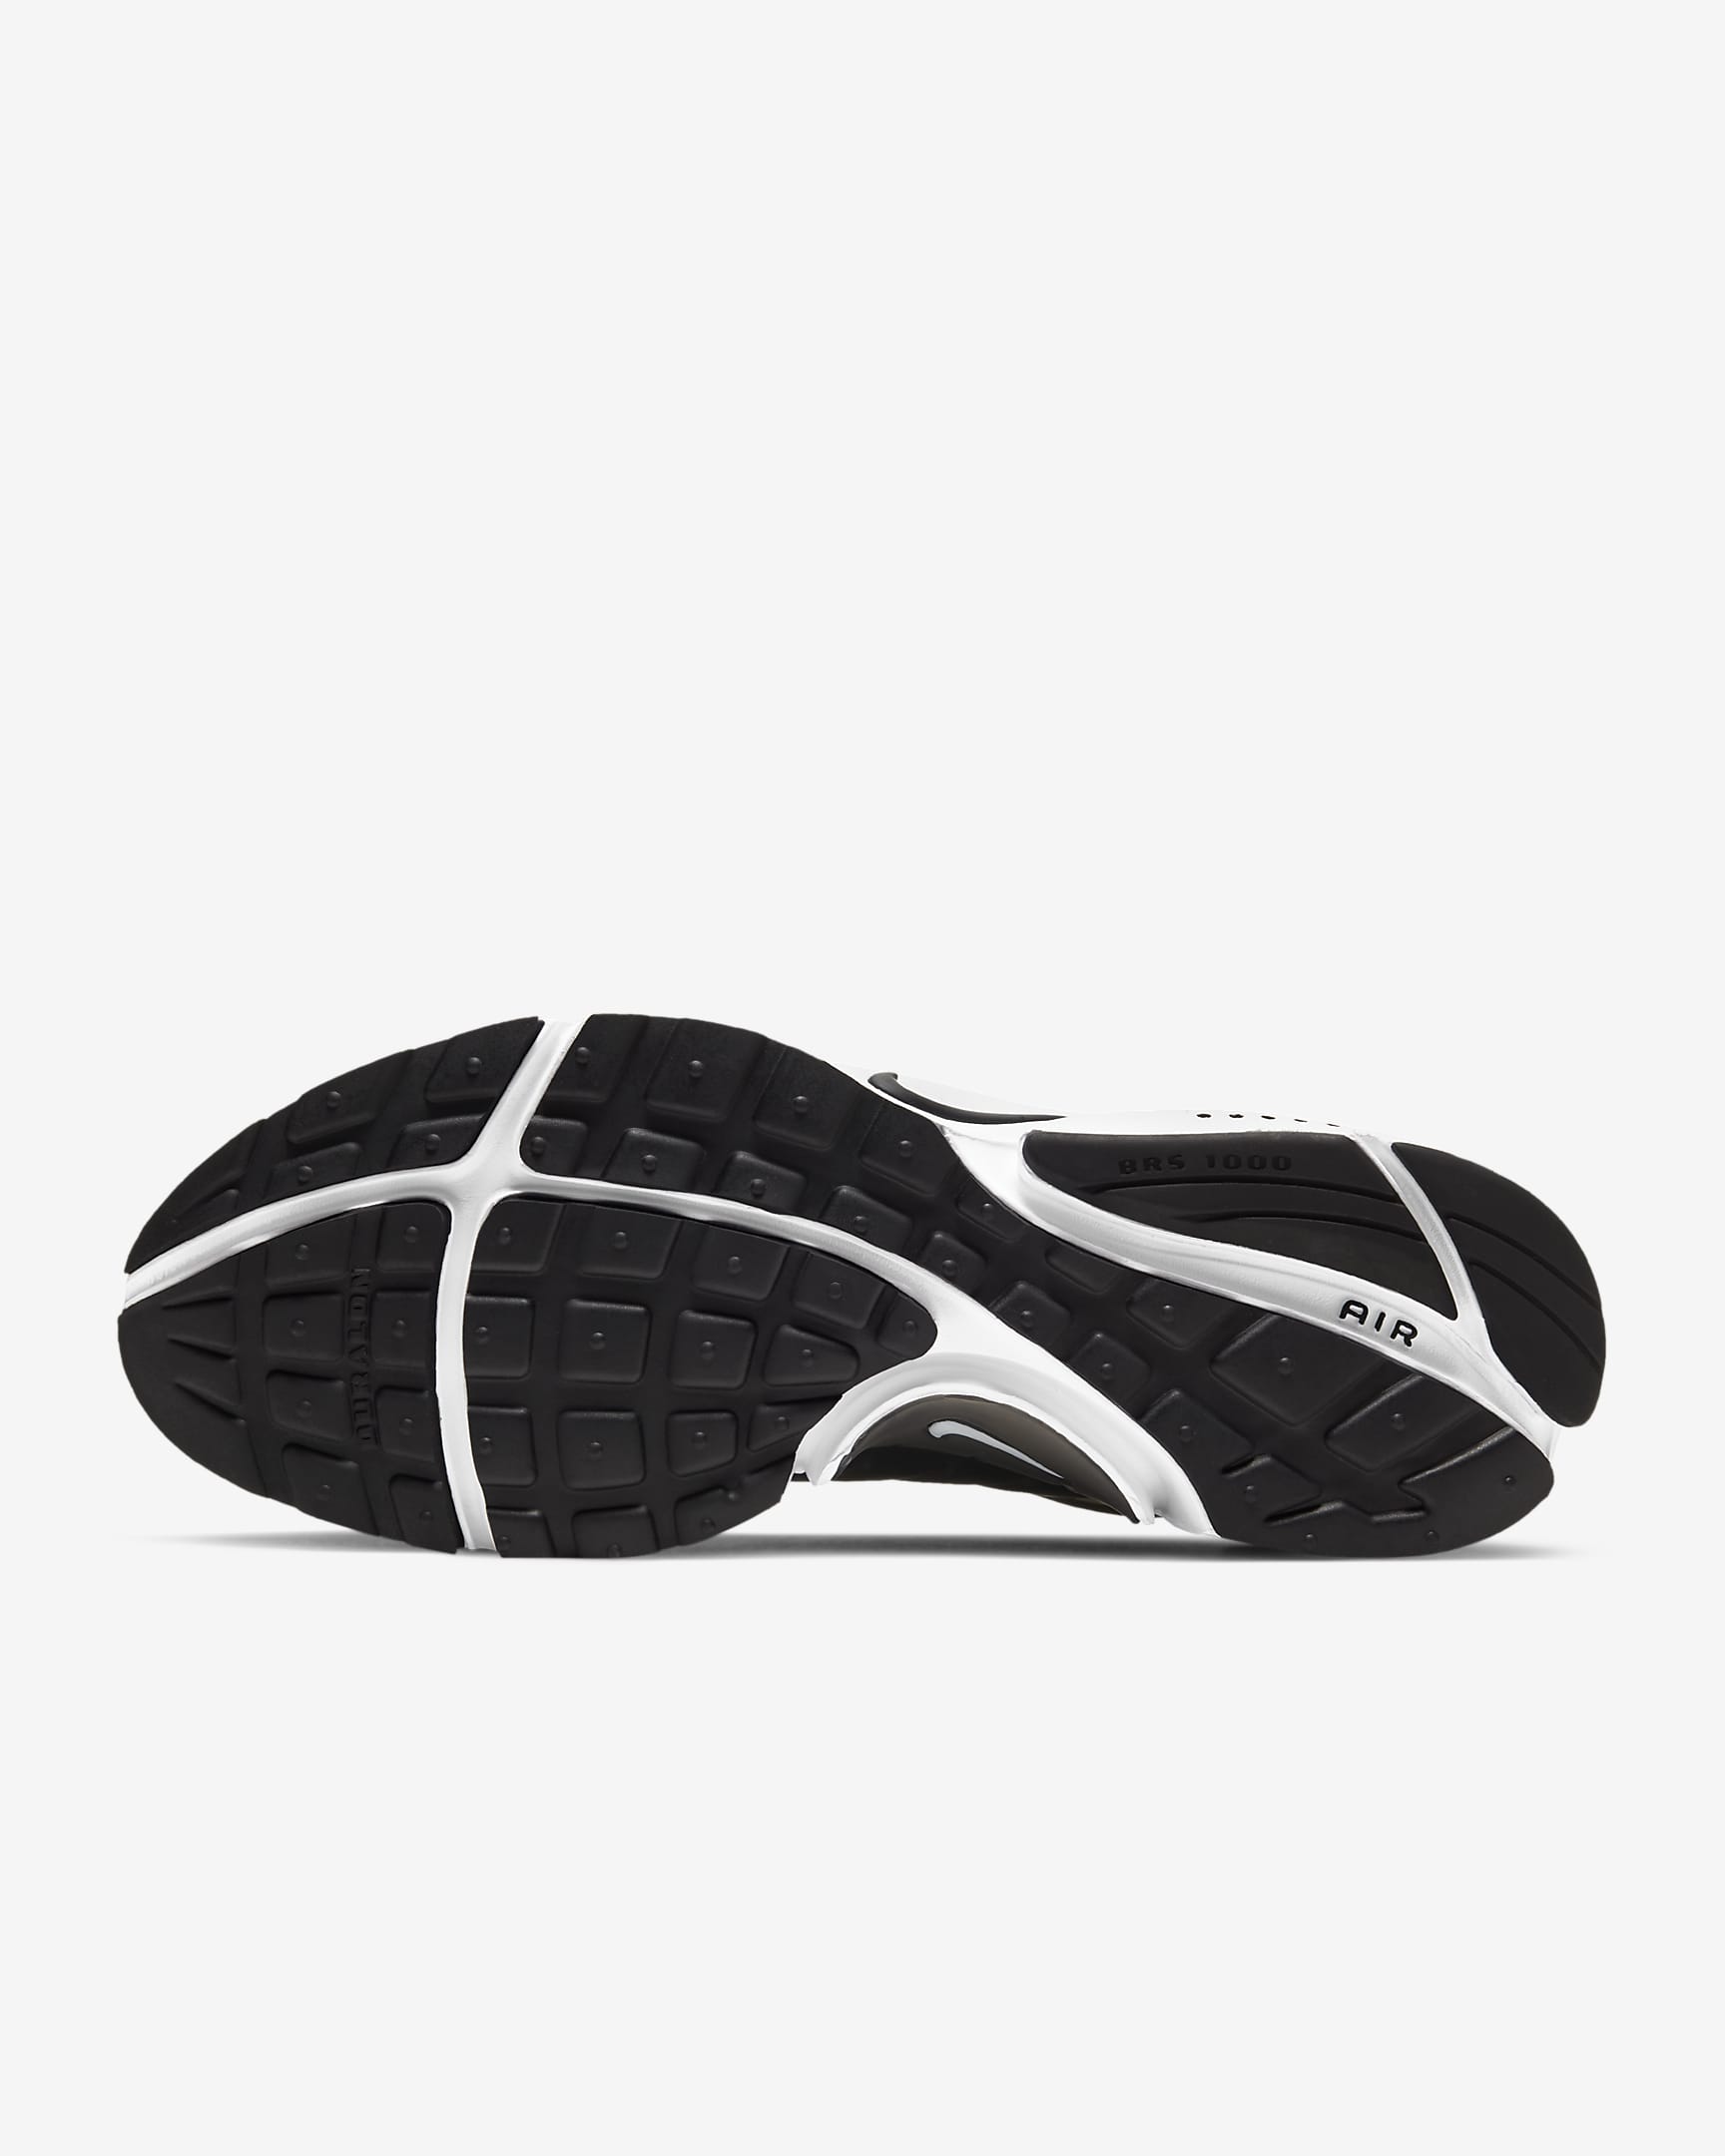 Nike Air Presto Zapatillas - Hombre - Negro/Blanco/Negro